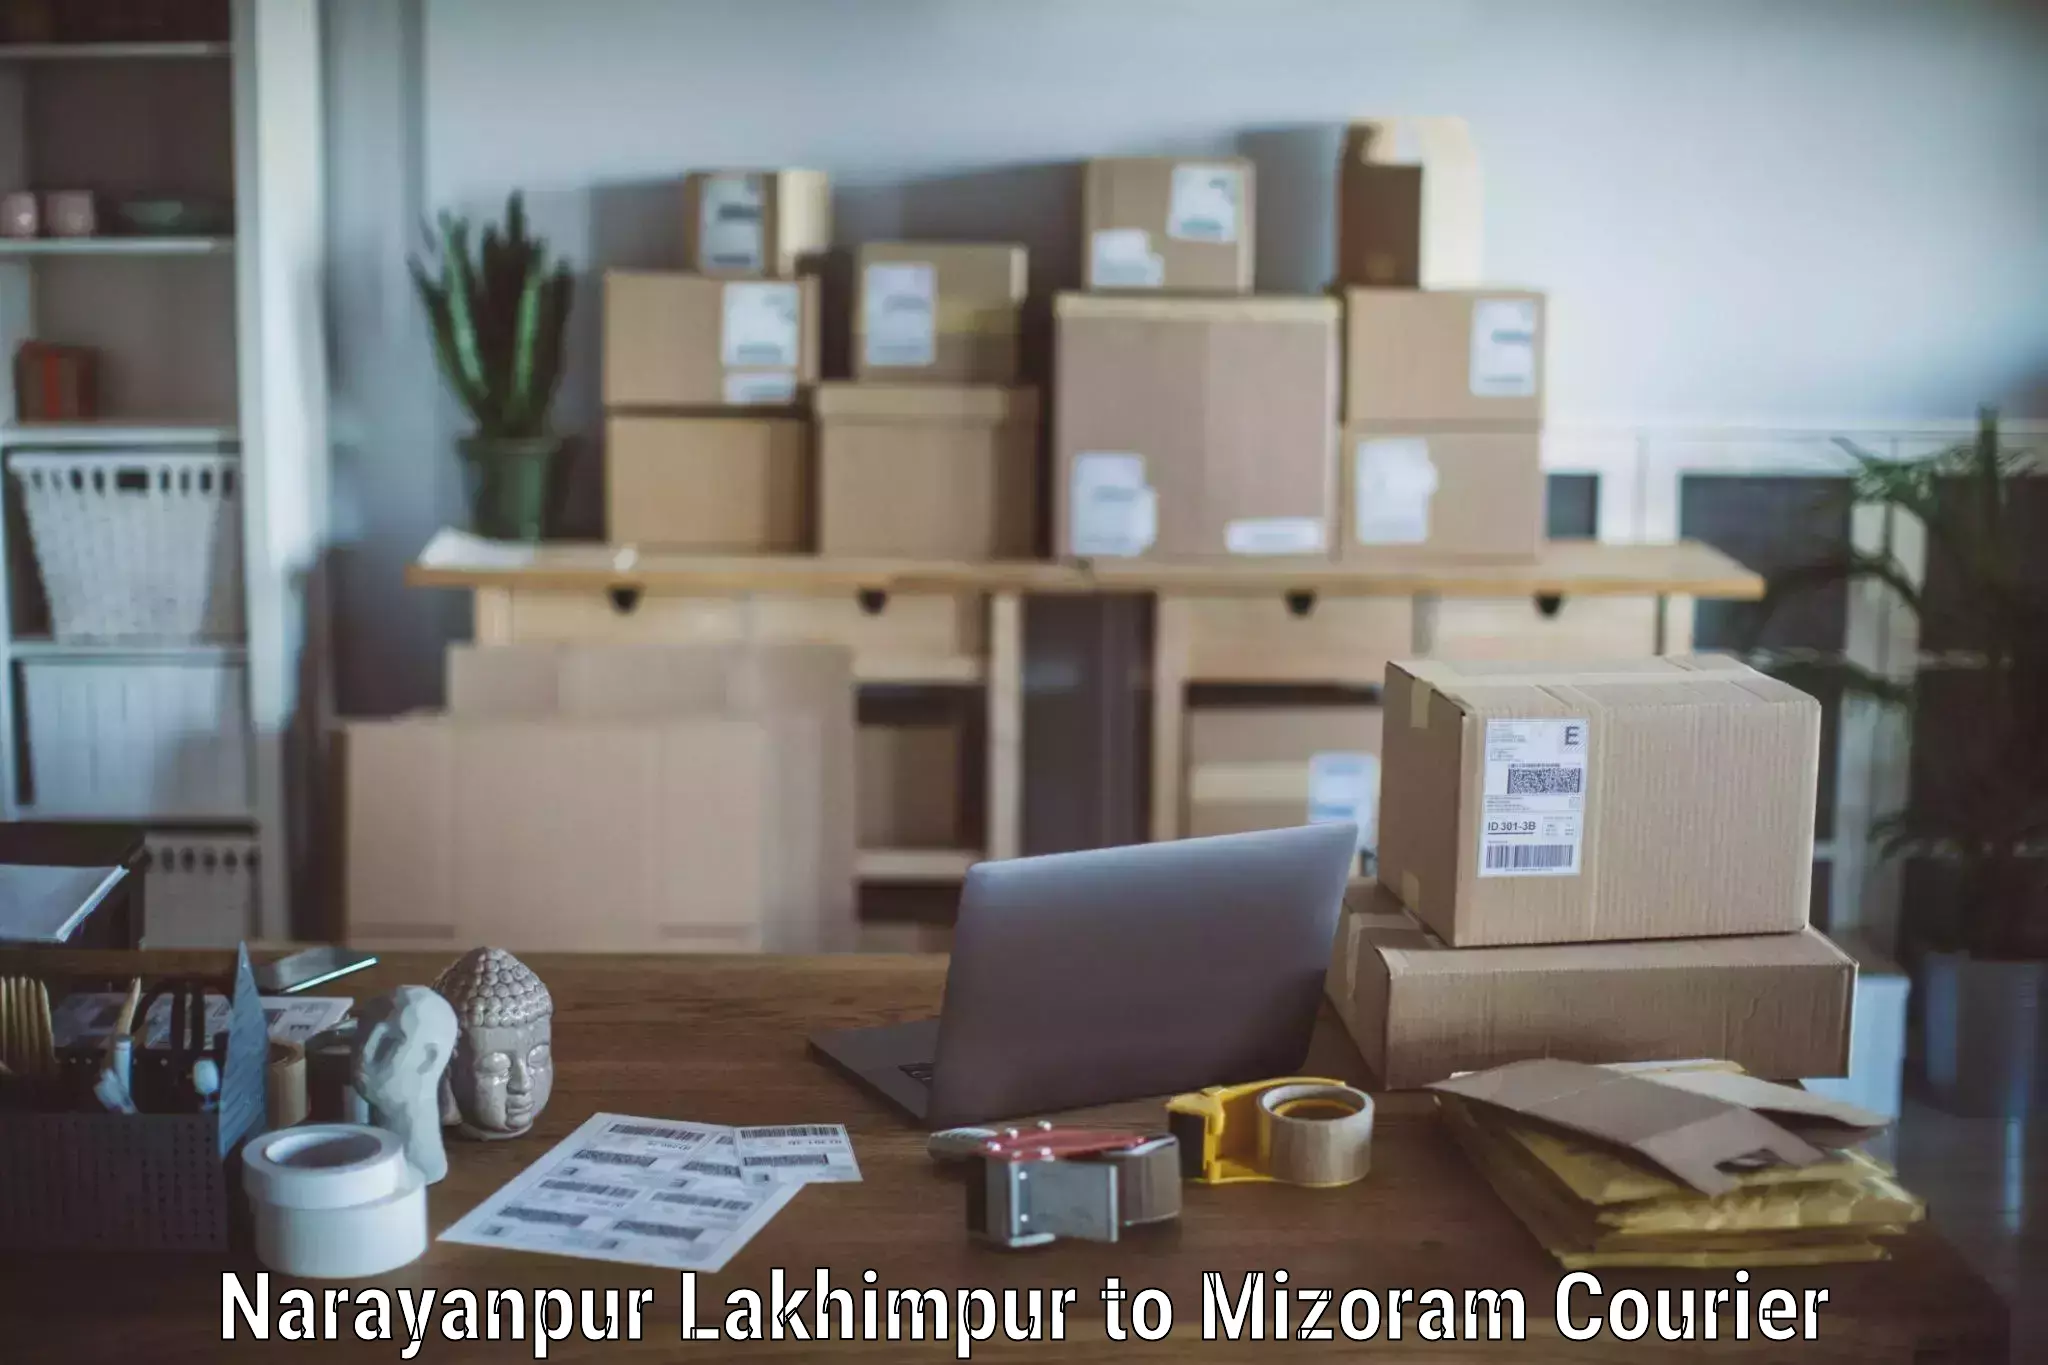 Skilled furniture transporters Narayanpur Lakhimpur to Saiha